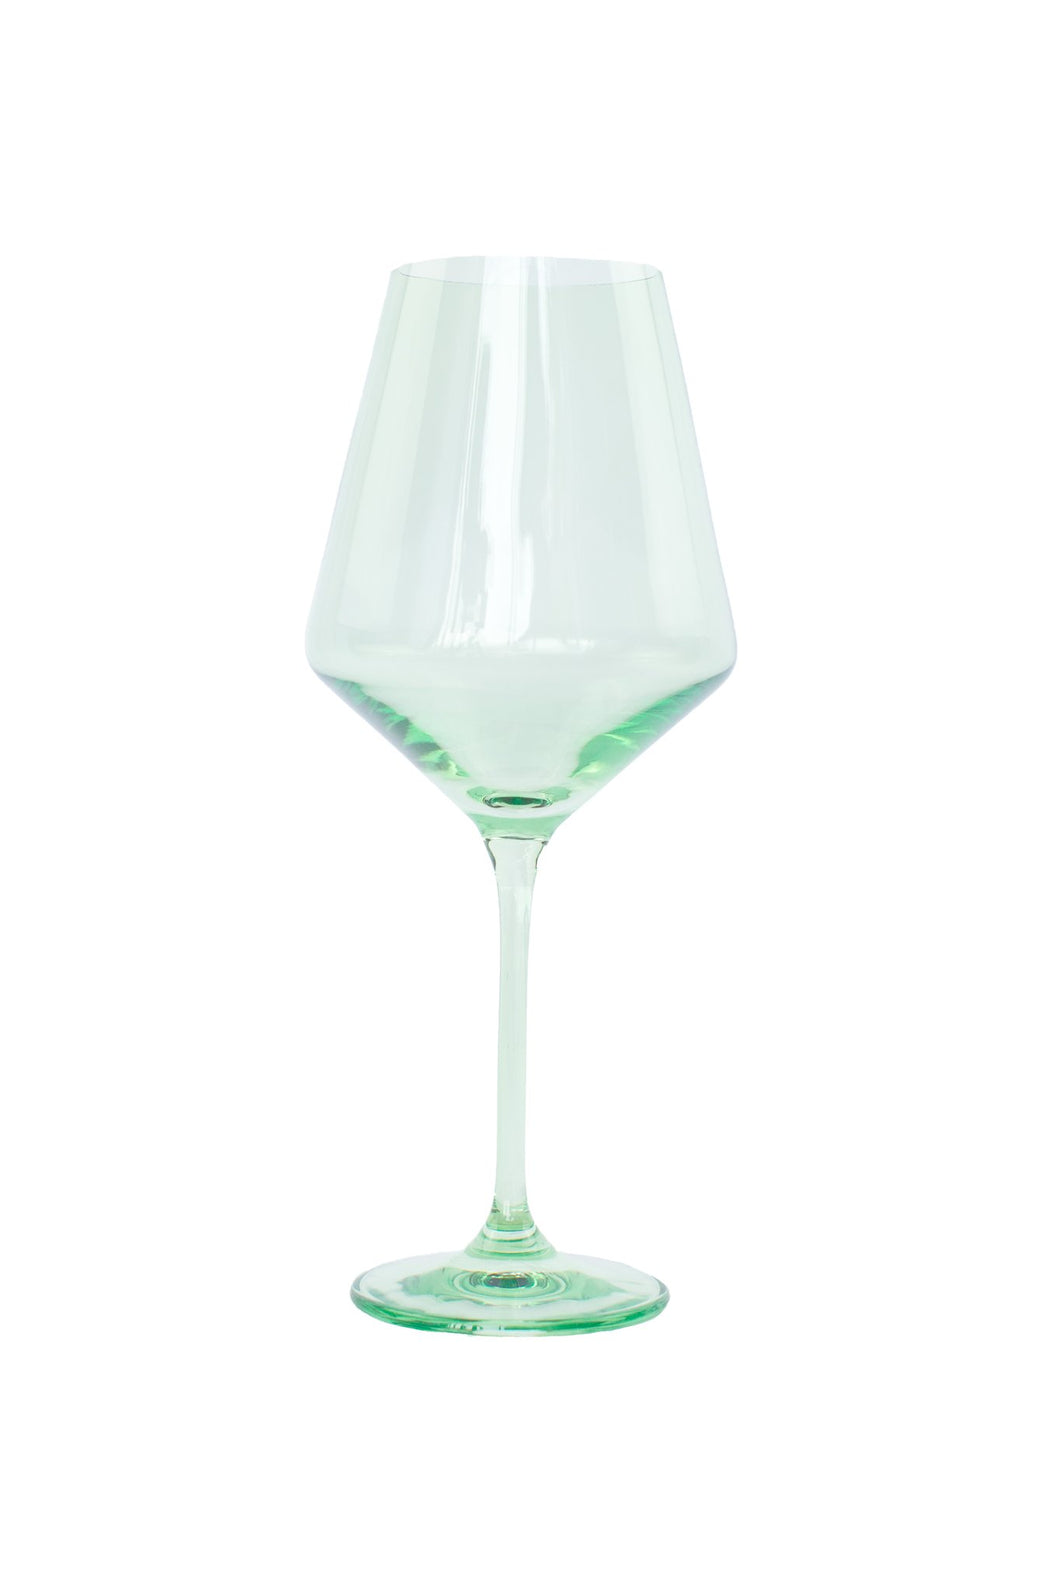 Mint Green Wine Glass